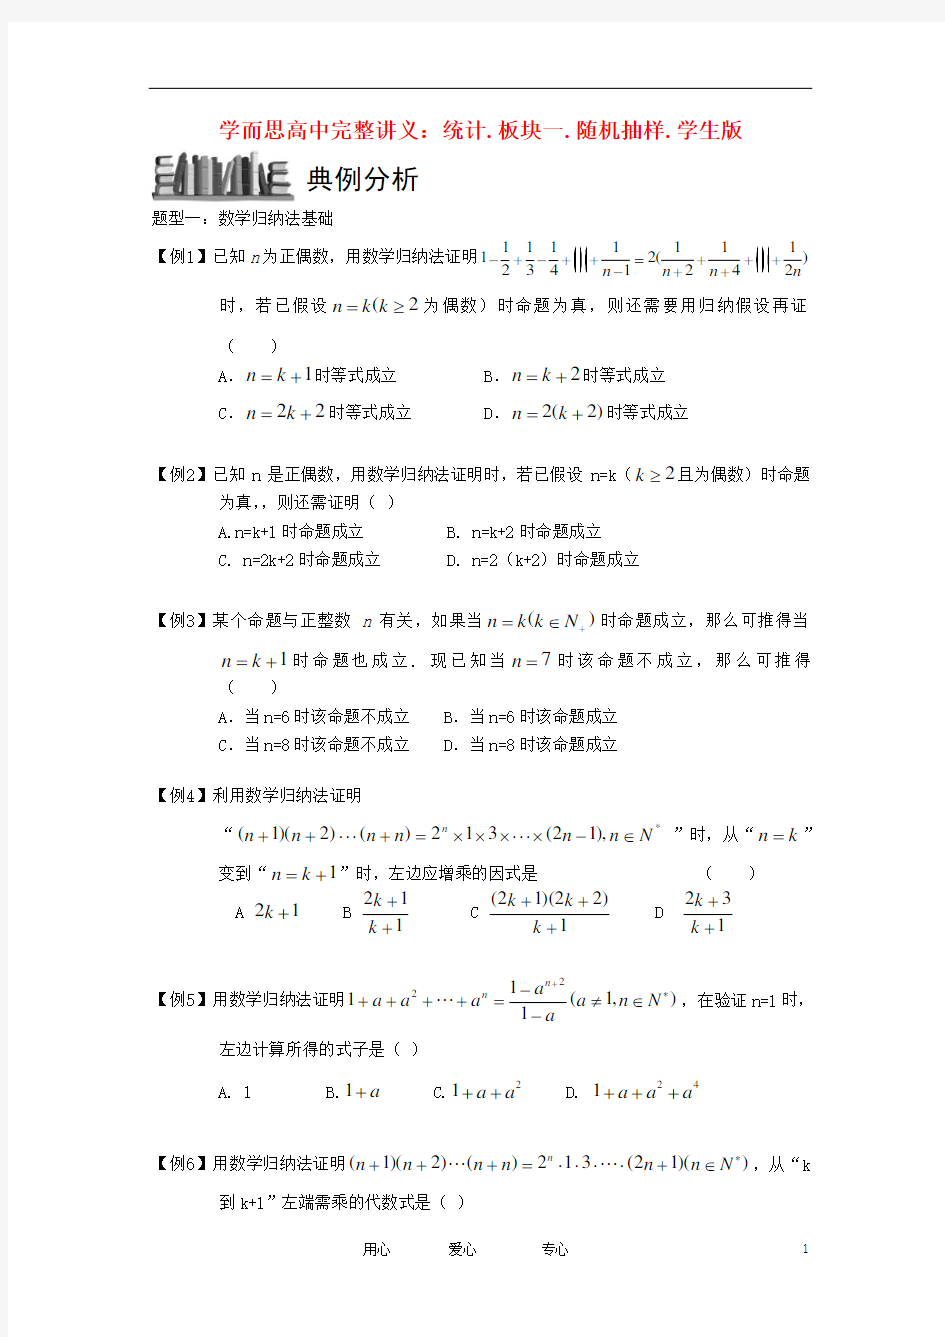 高中数学 推理与证明 板块三 数学归纳法完整讲义(学生版).doc